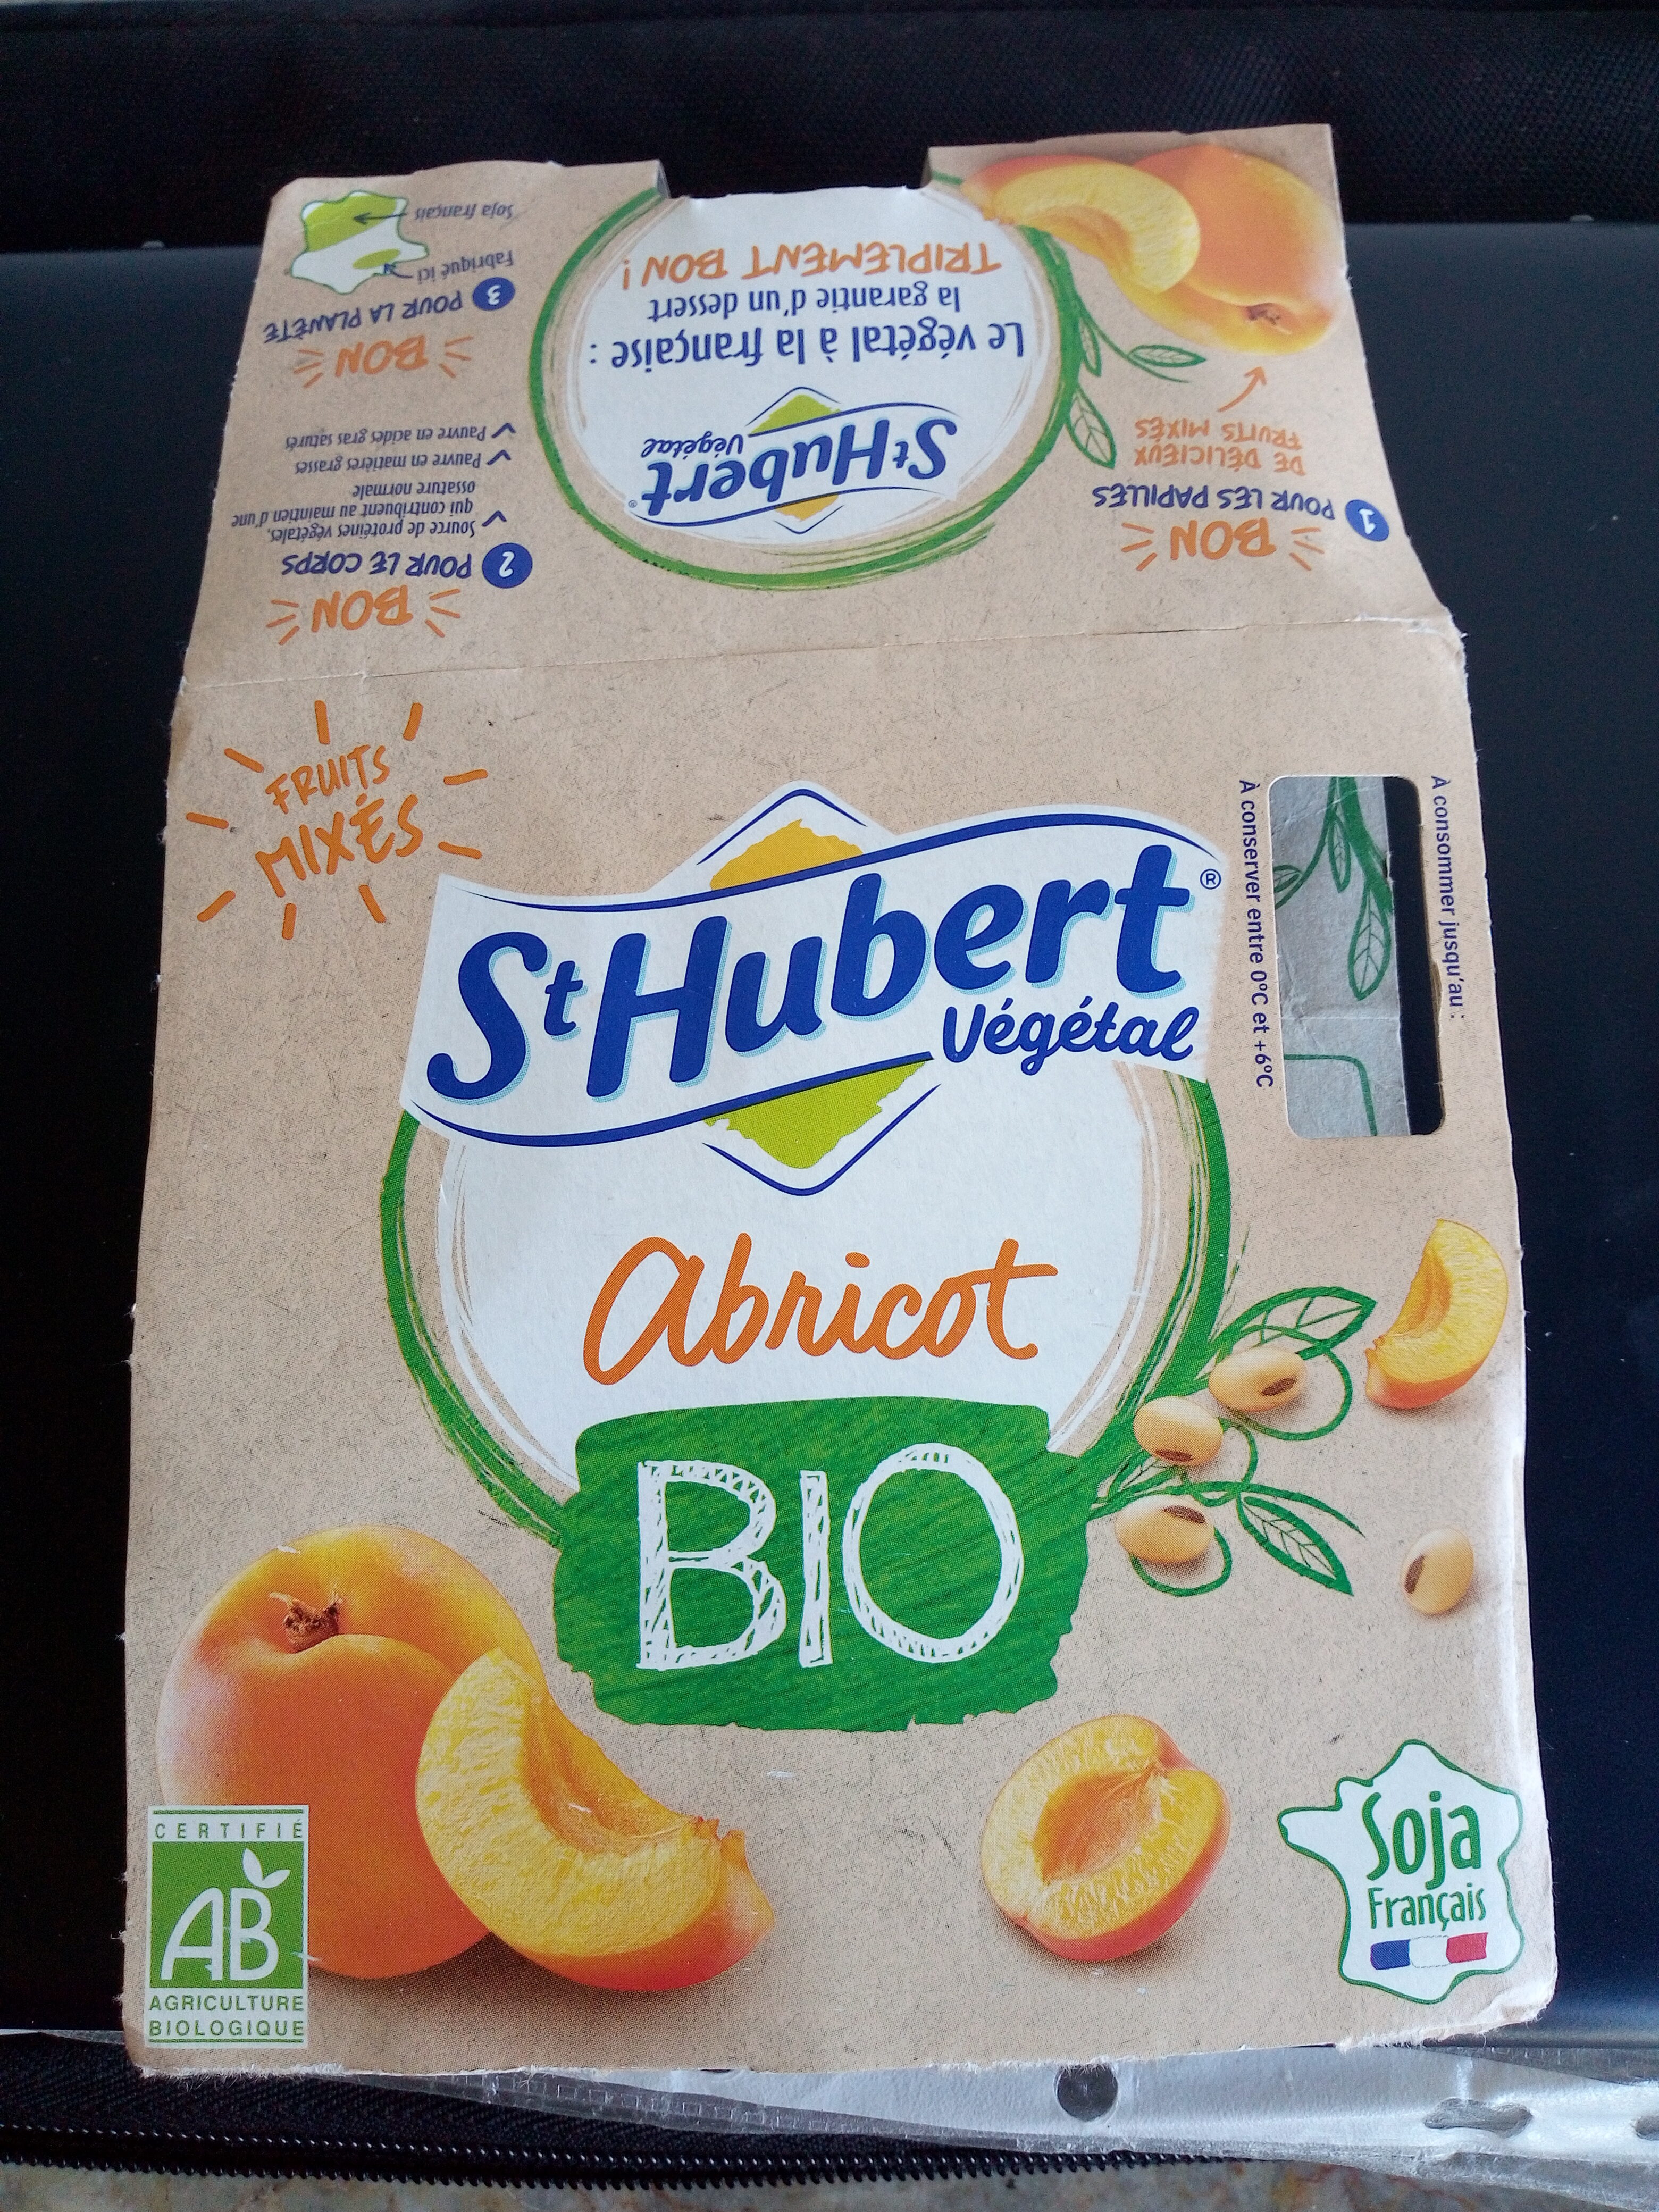 St Hubert Végétal Abricot Bio - Producto - fr